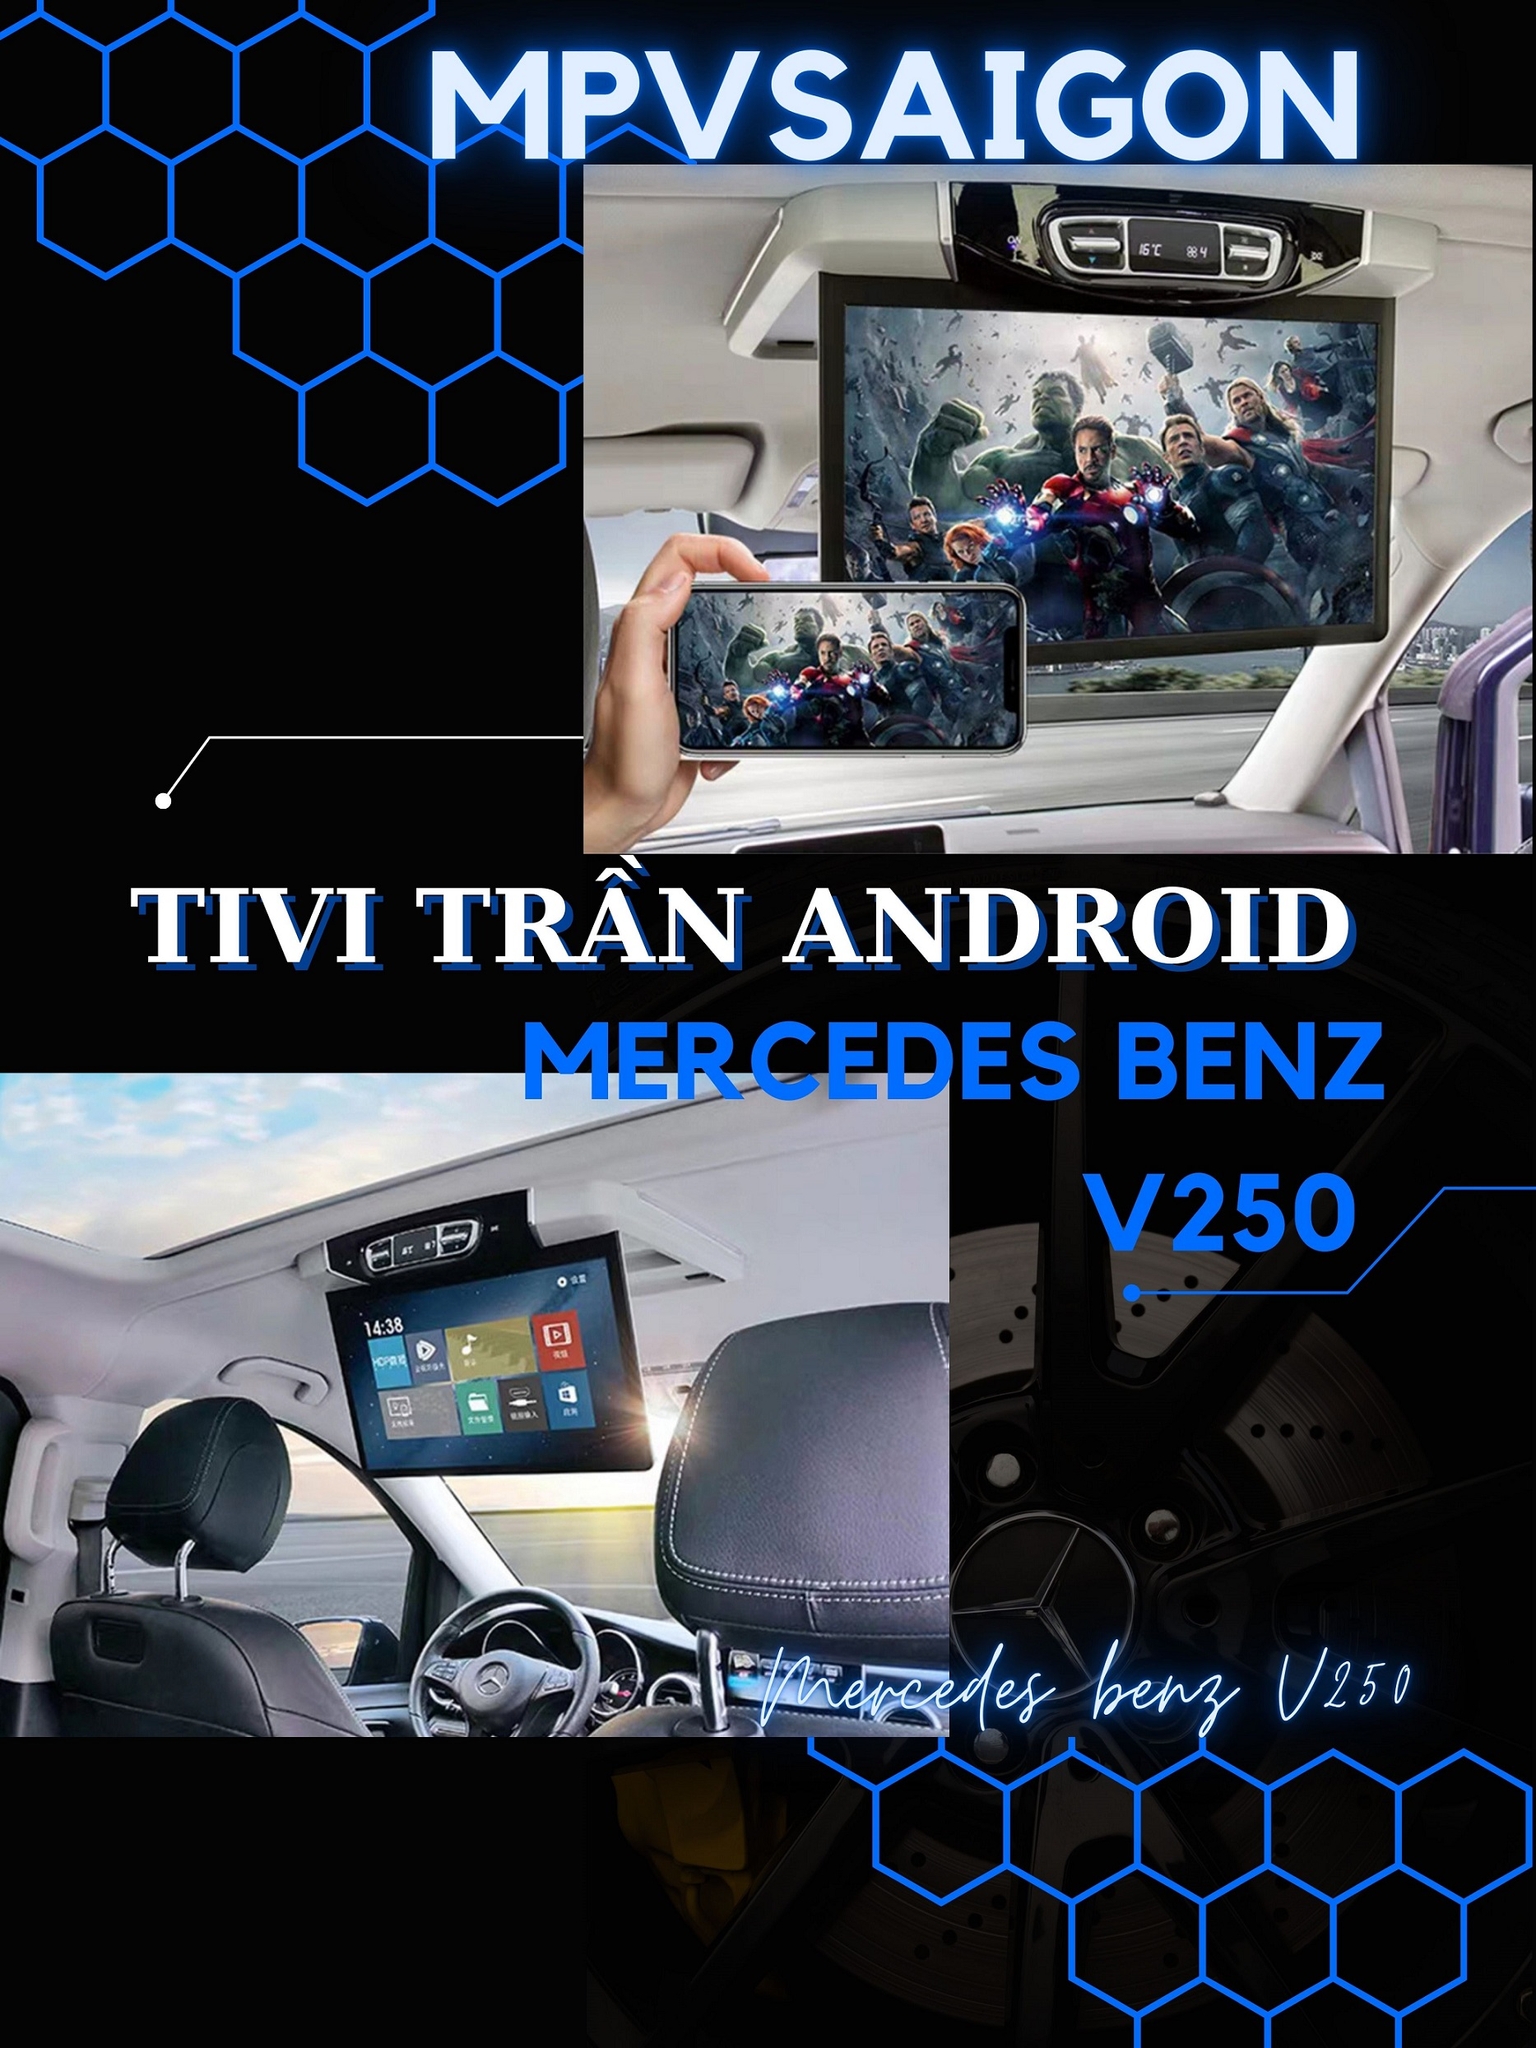 Tivi trần Android Mercedes Benz V250